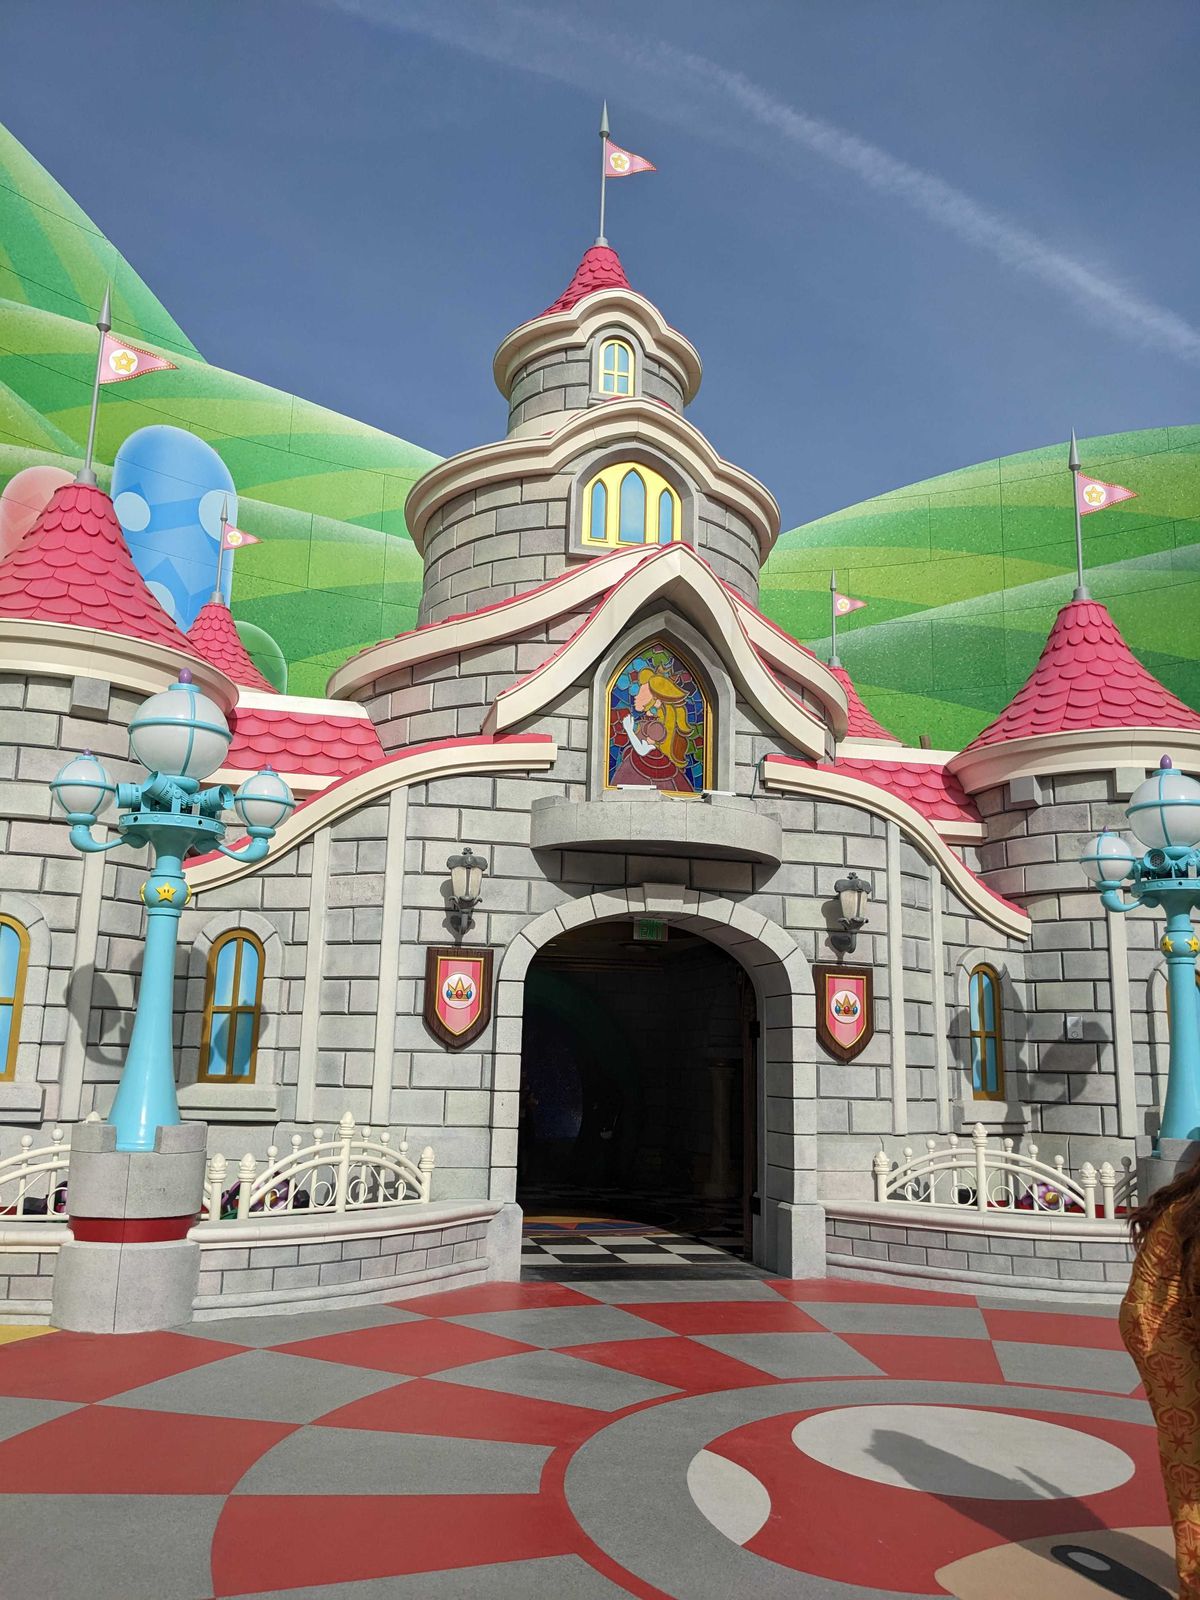 Il castello della Principessa Peach in Super Nintendo World.  Il castello è grigio, ha più piani, tetto rosa, un'immagine in vetro colorato di una Principessa Peach e una bandiera in cima.